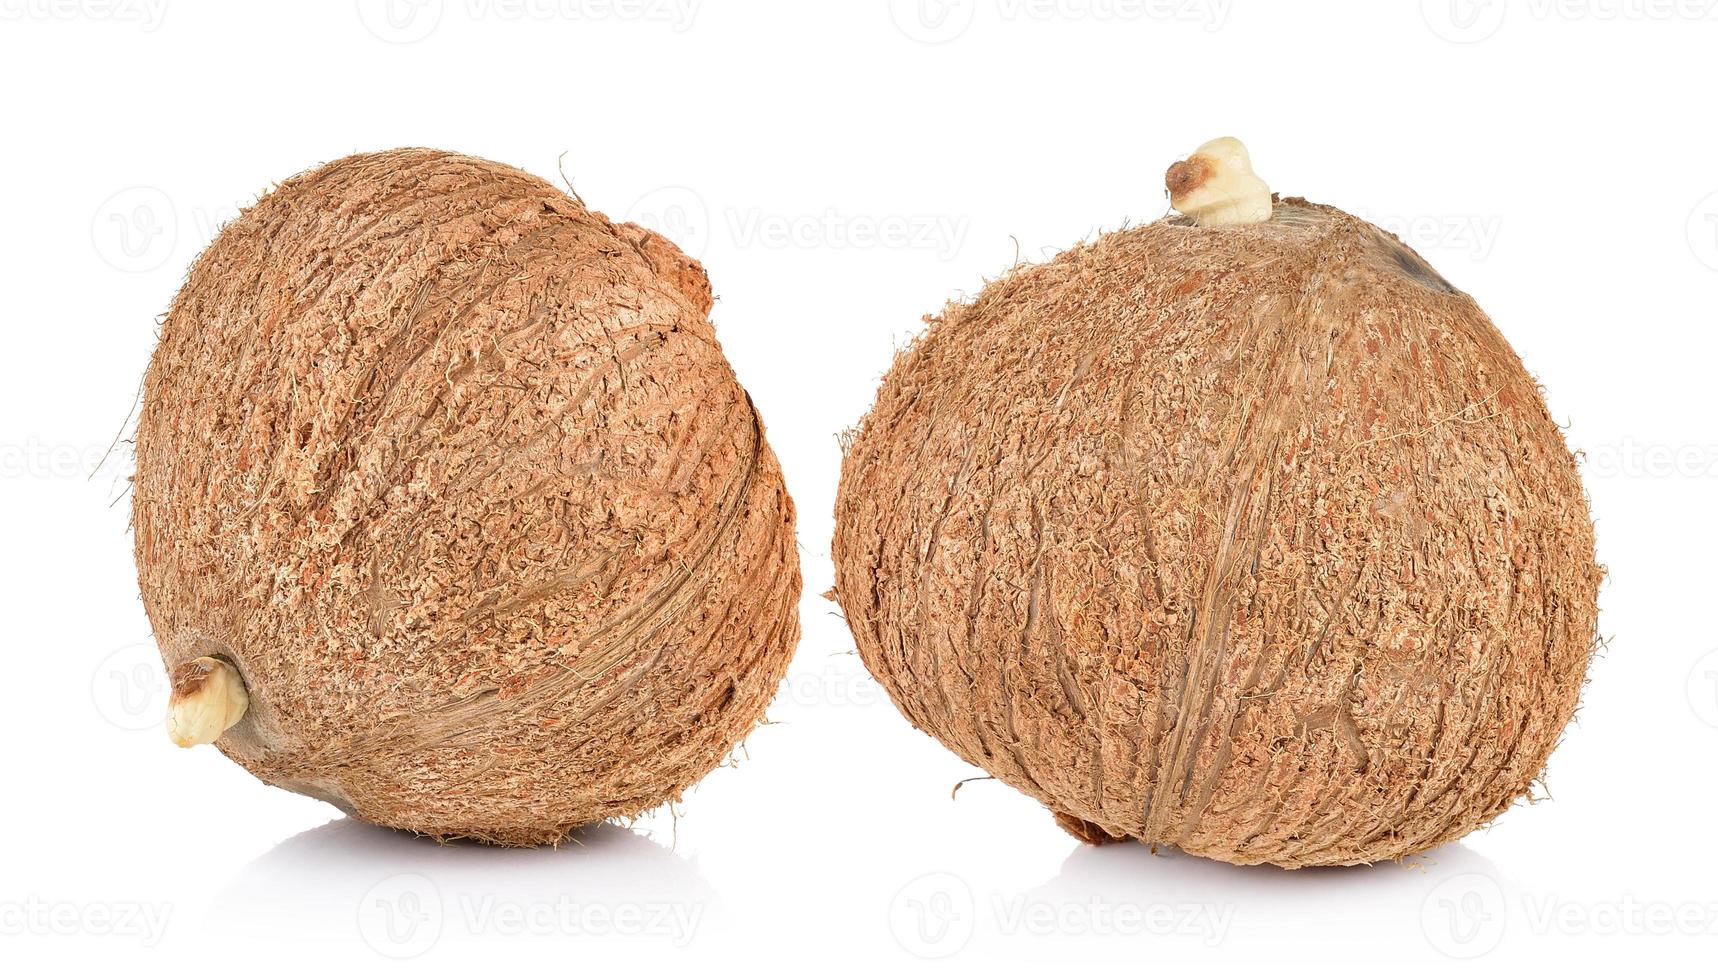 kokosnoot close-up op een witte achtergrond foto